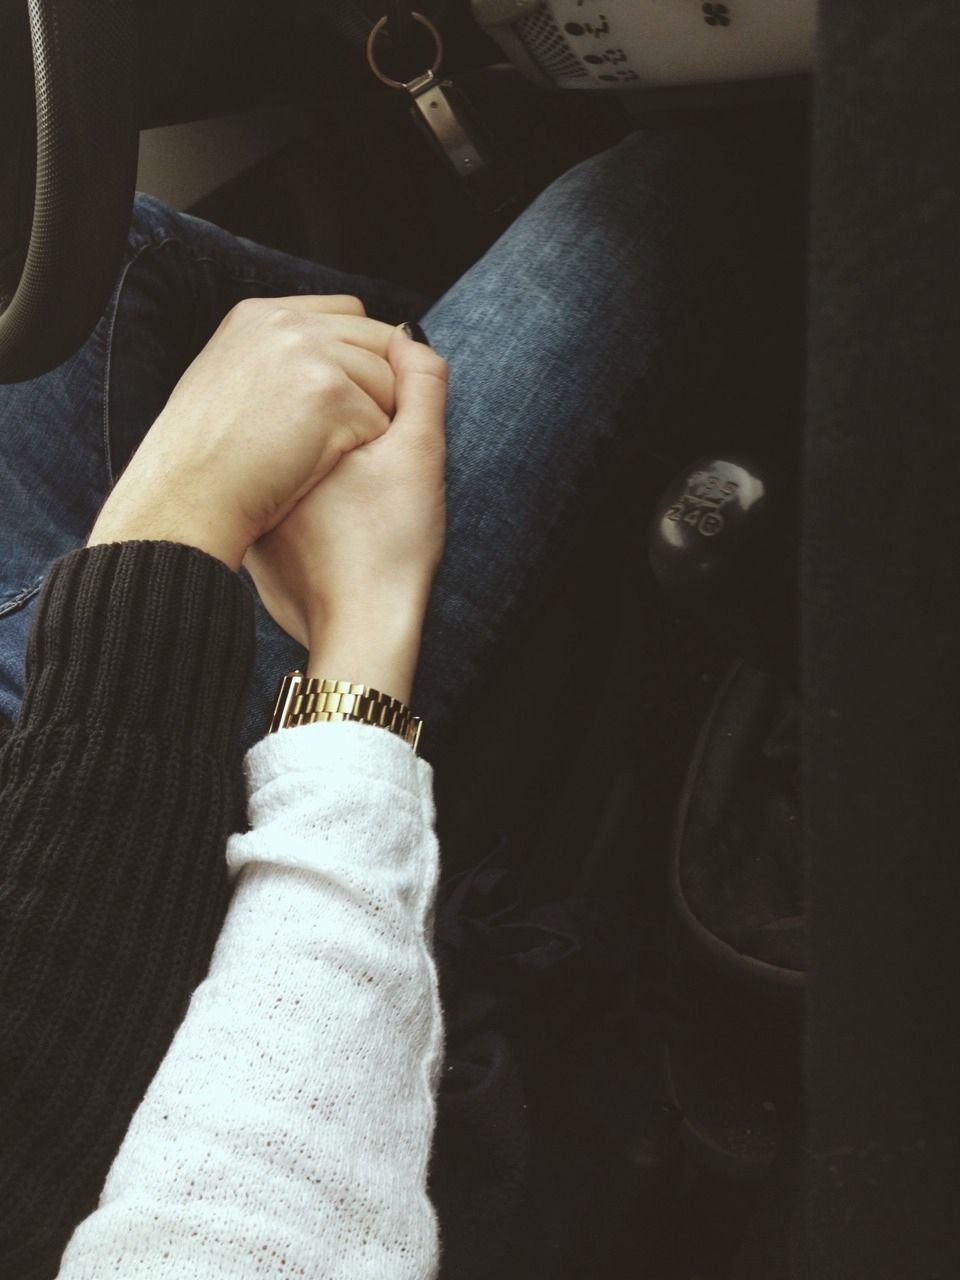 Рук мужчины и женщины в машине (32 фото)